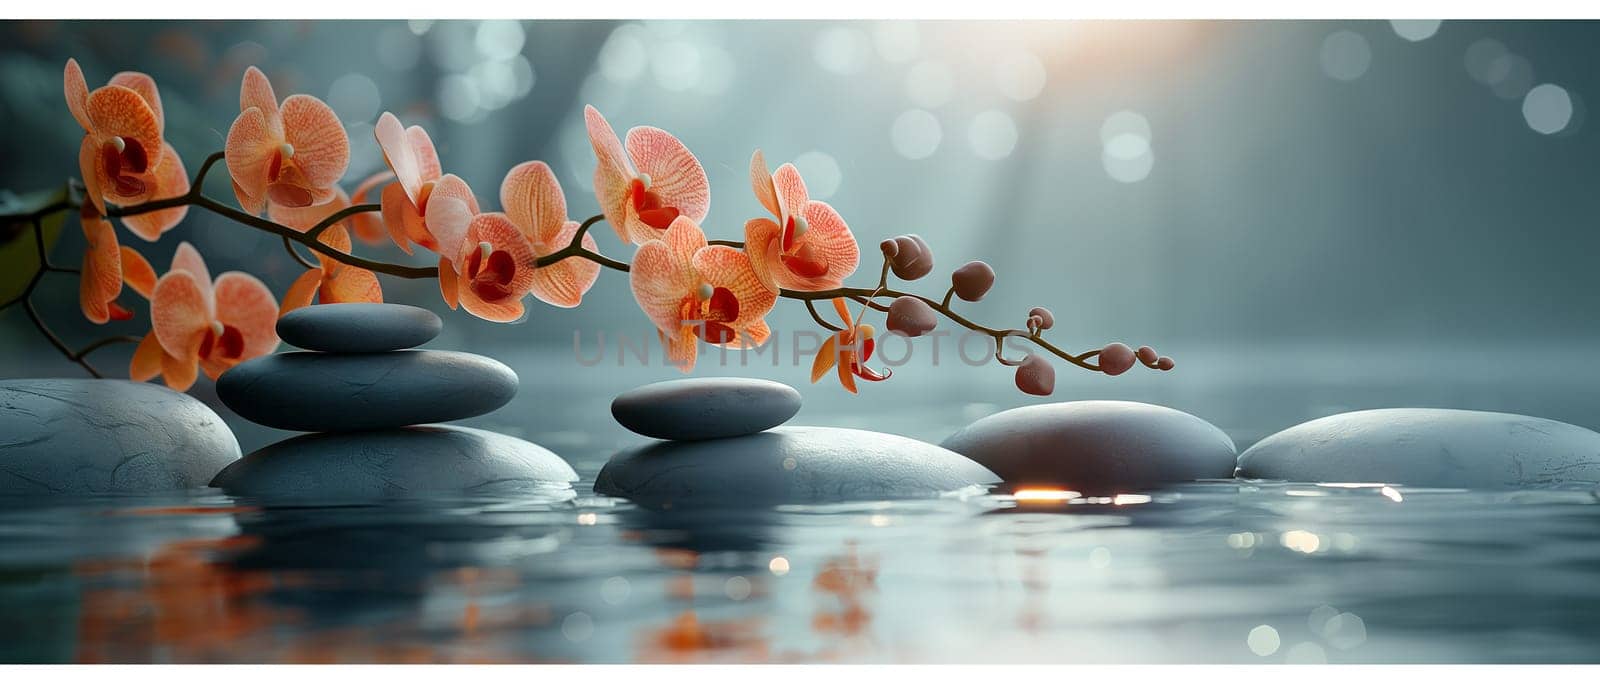 Zen stones and orchid branch. by Fischeron